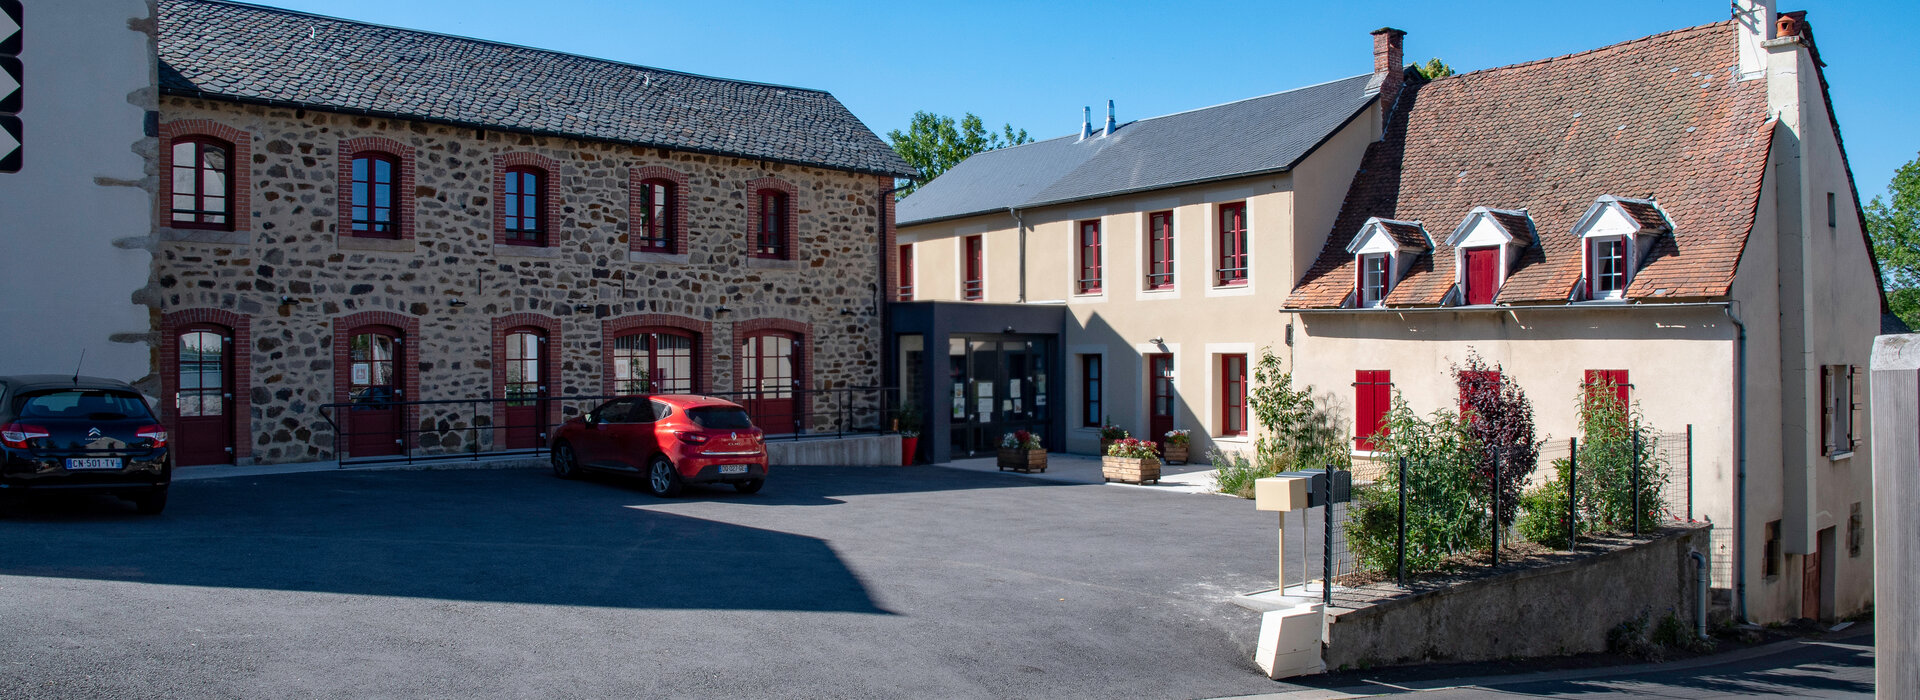 Bienvenue a Bourg-Lastic, commune du Puy de dôme en Auvergne